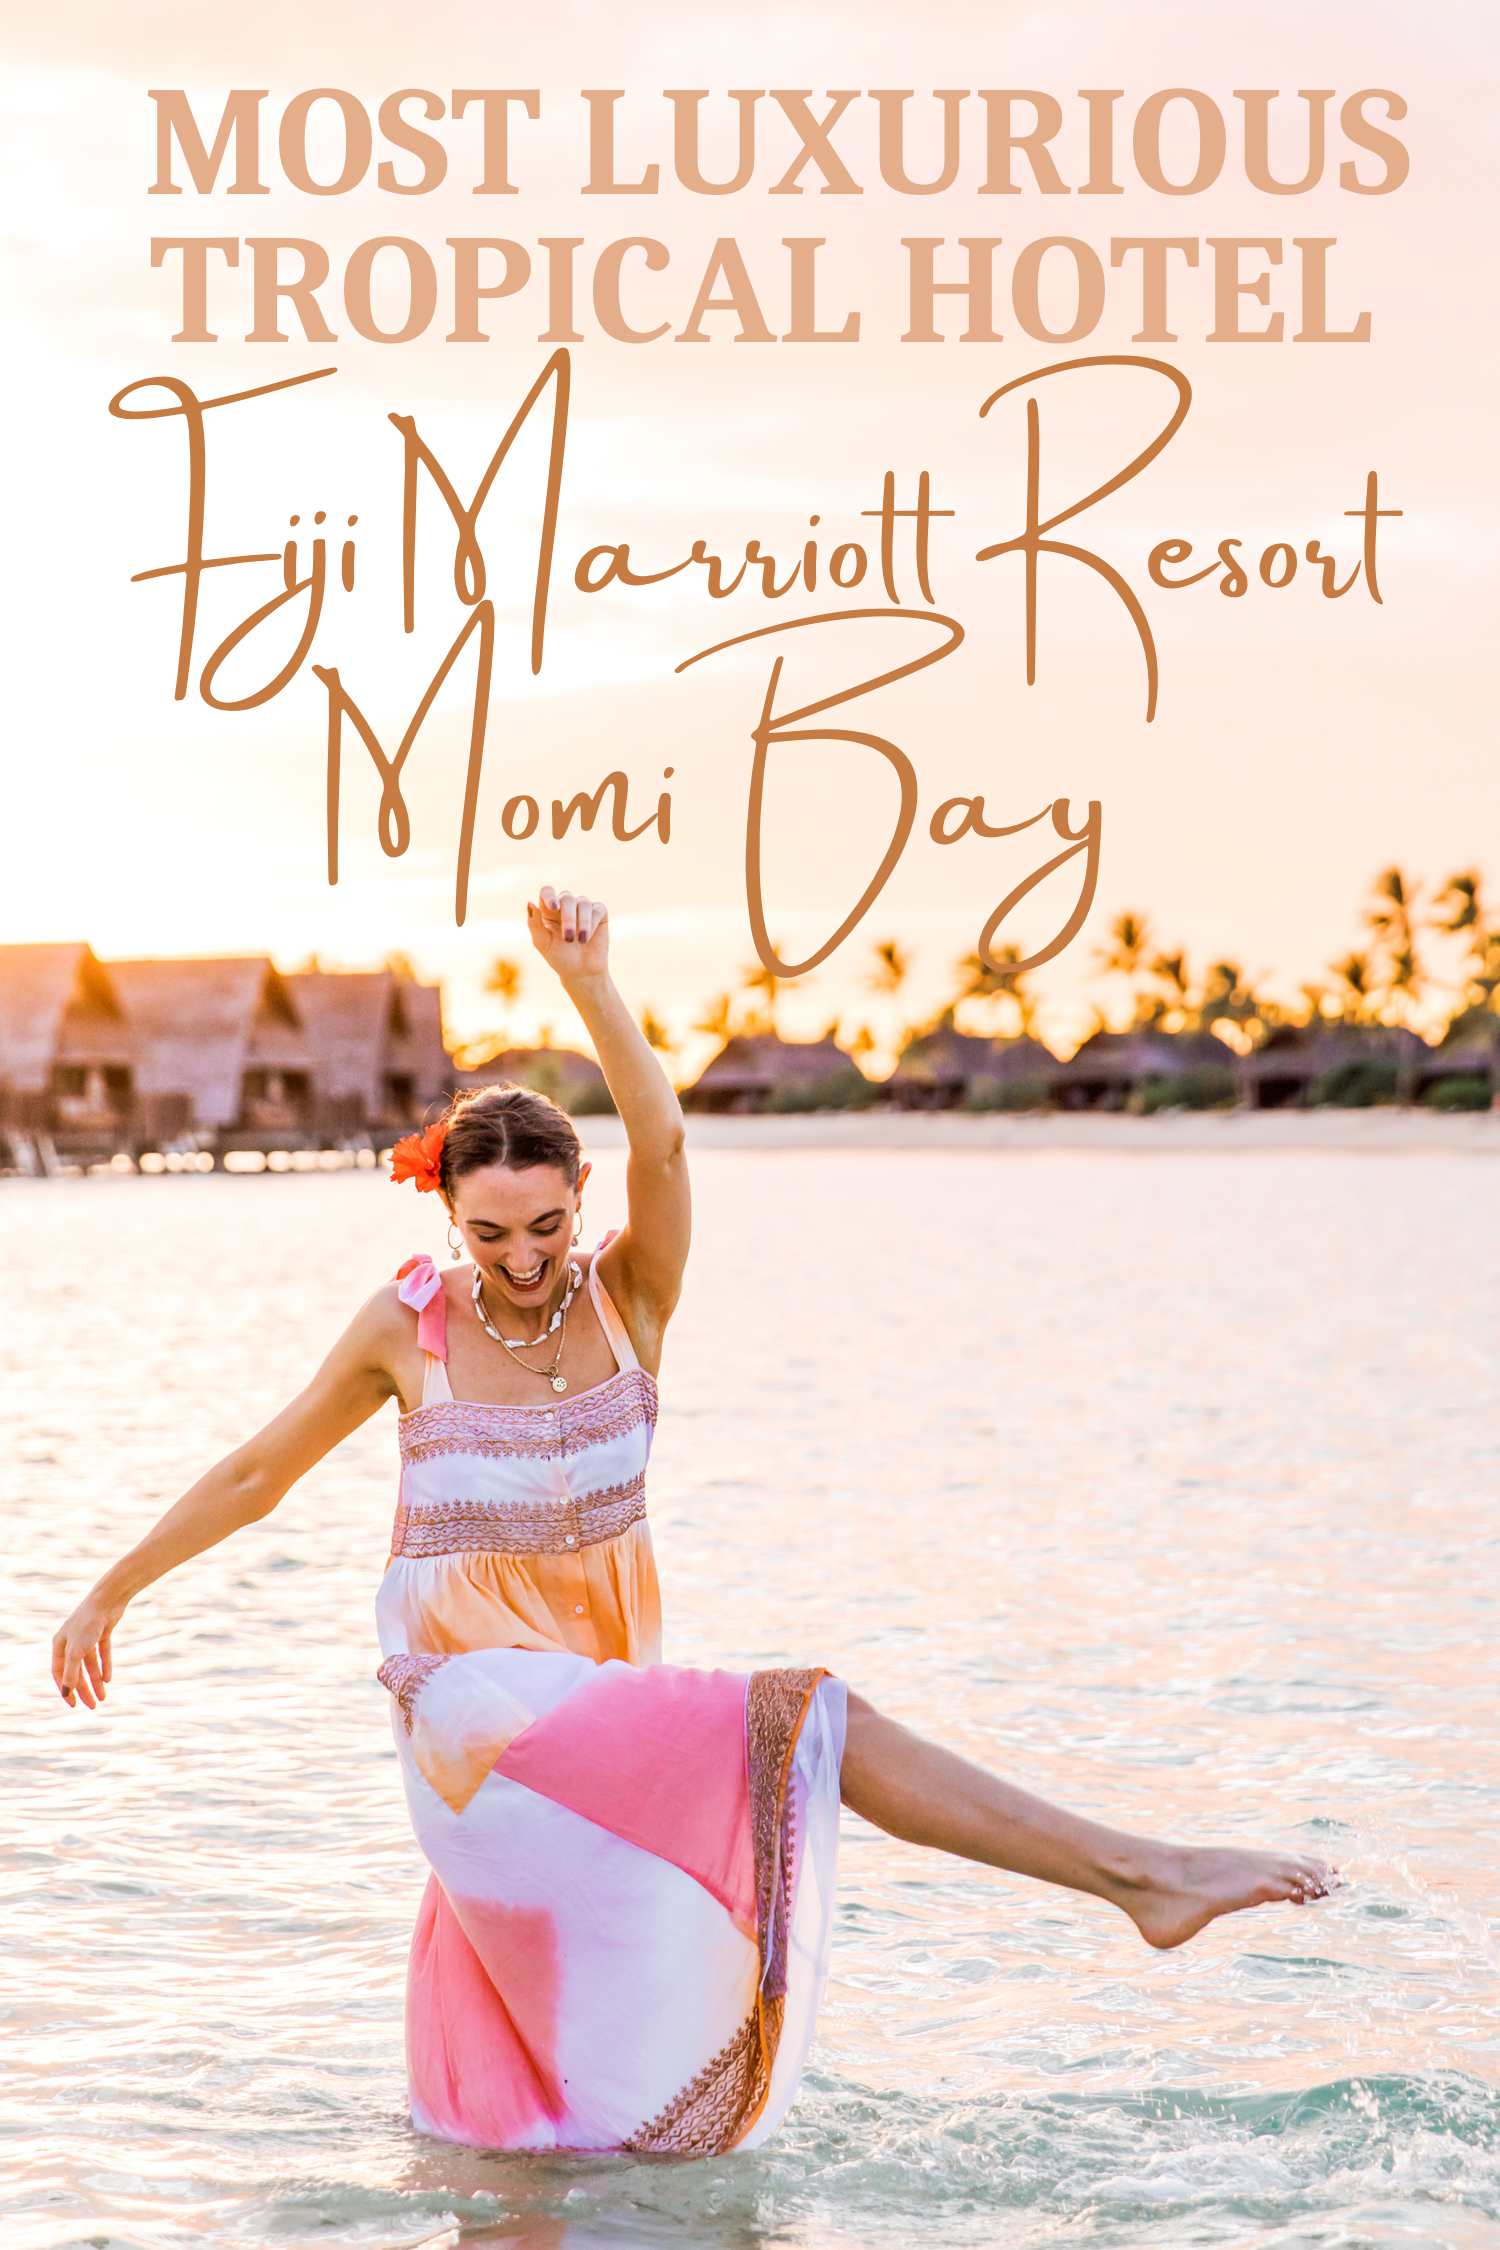 Travel Guide: Fiji Marriott Resort Momi Bay